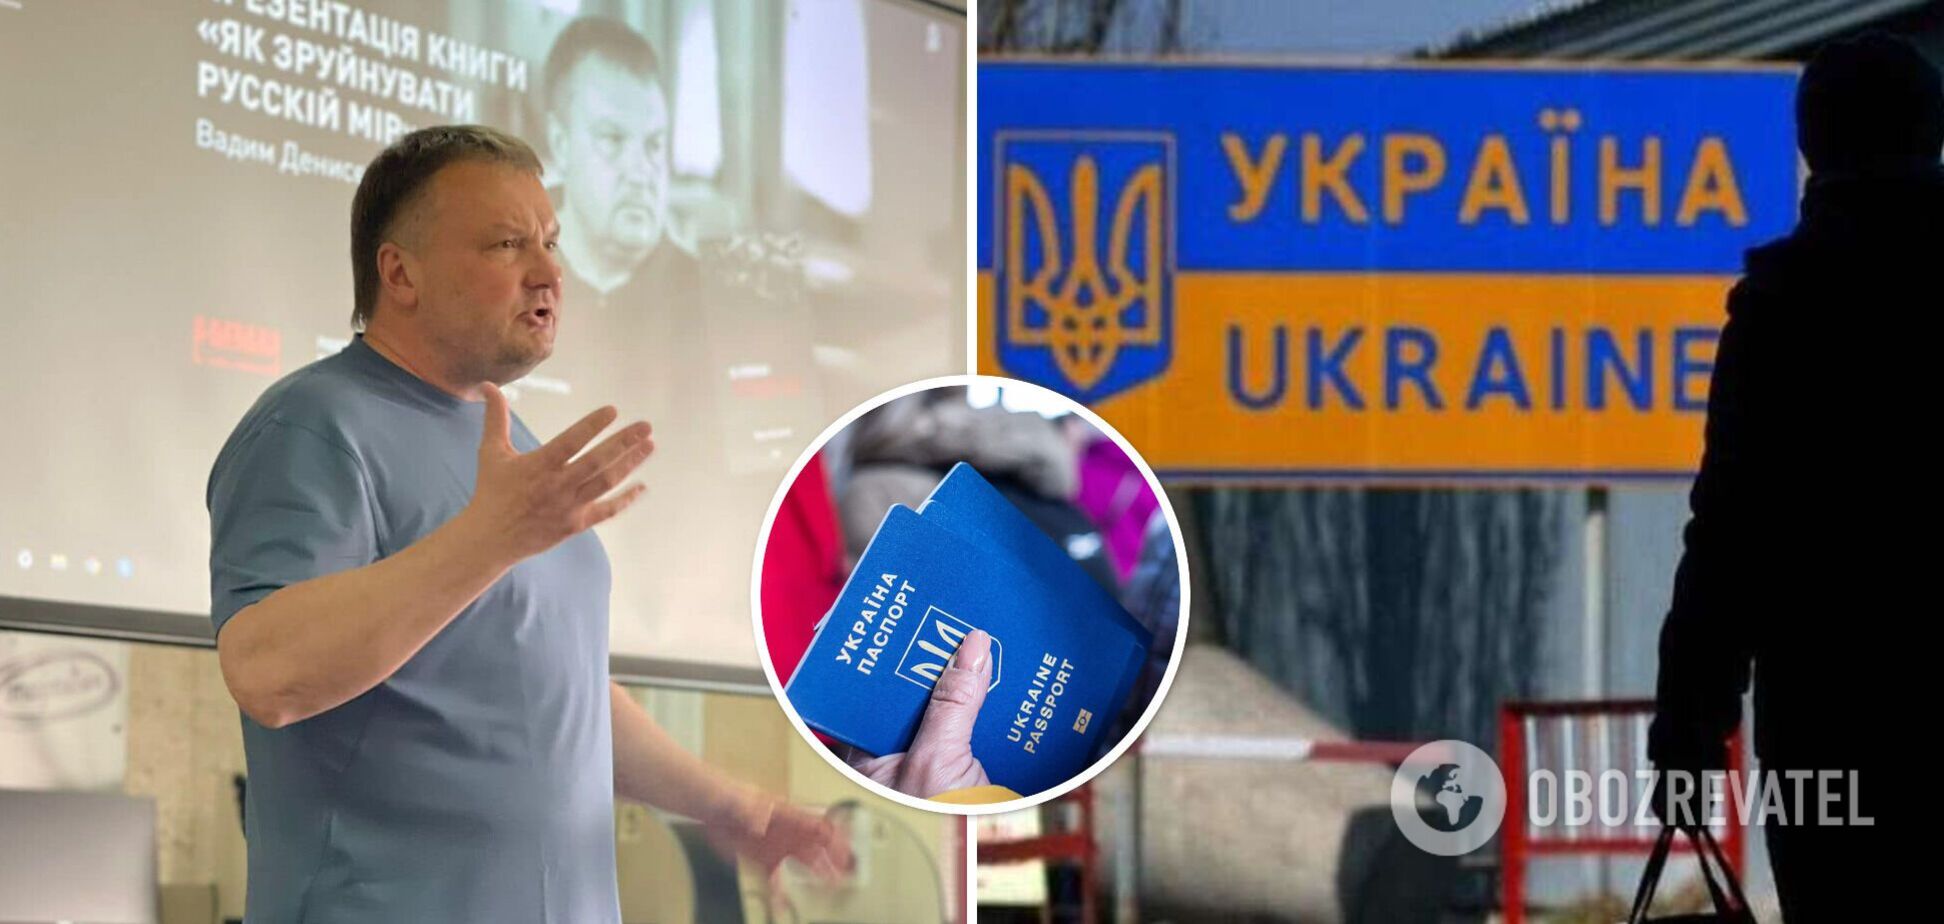 Український інститут майбутнього оголосив про початок дискусії щодо боротьби з депопуляцією країни